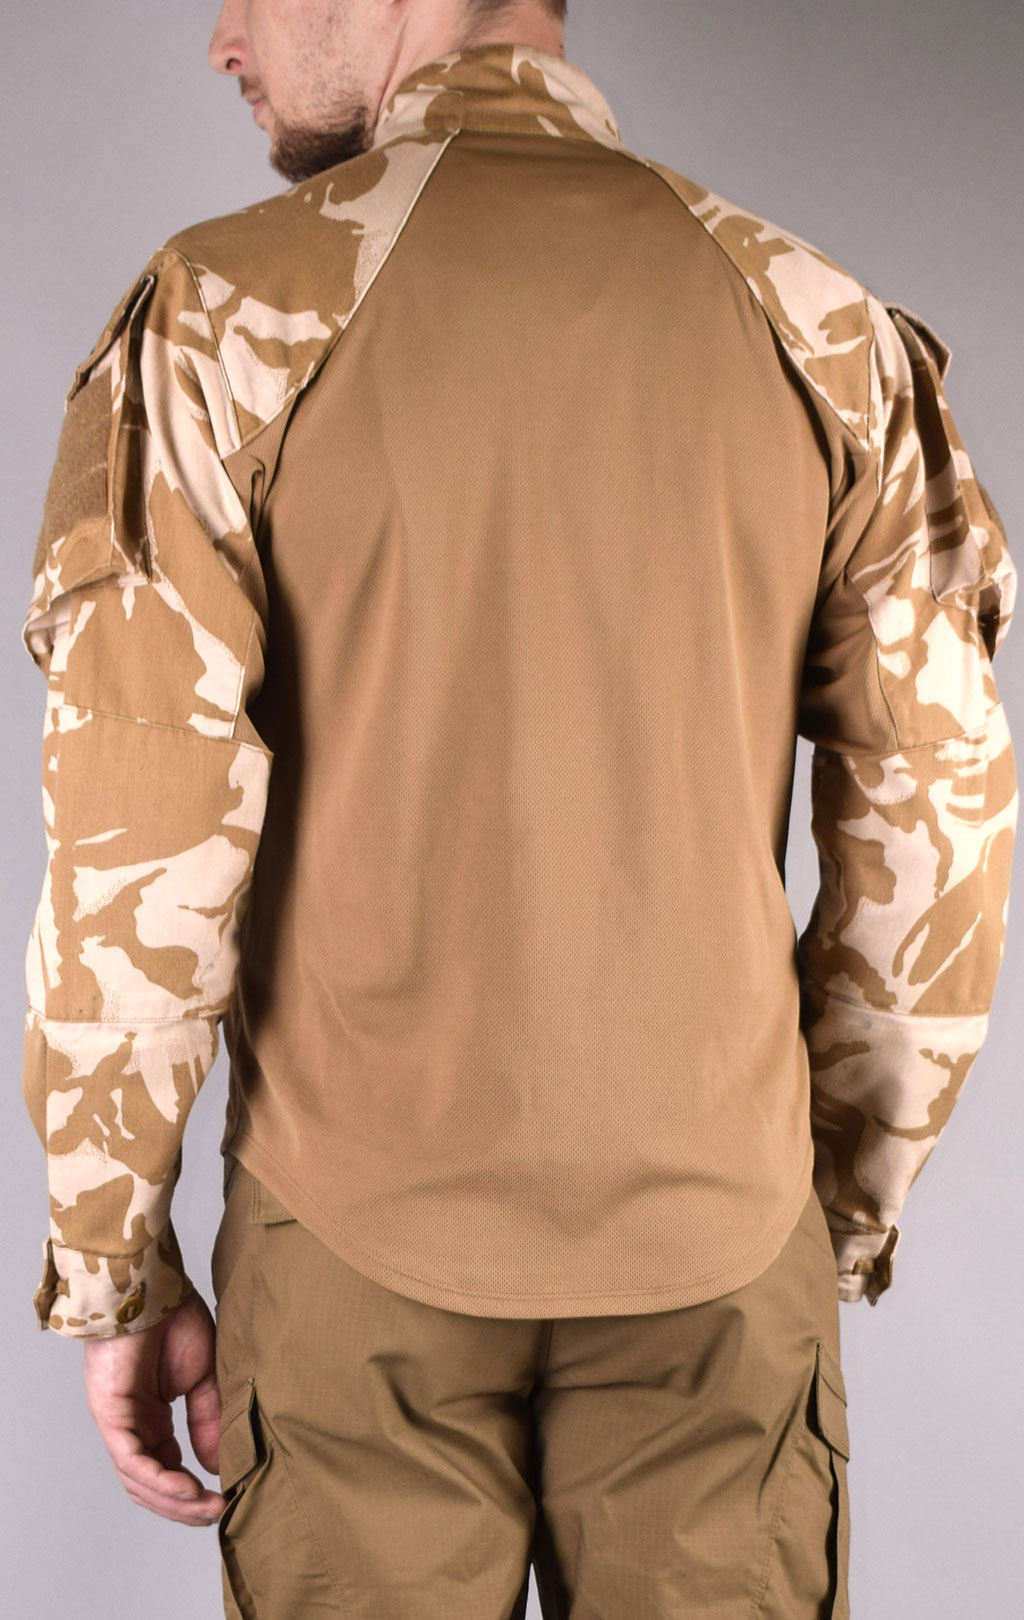 Рубашка Combat Shirt с защитой dpm desert б/у Англия